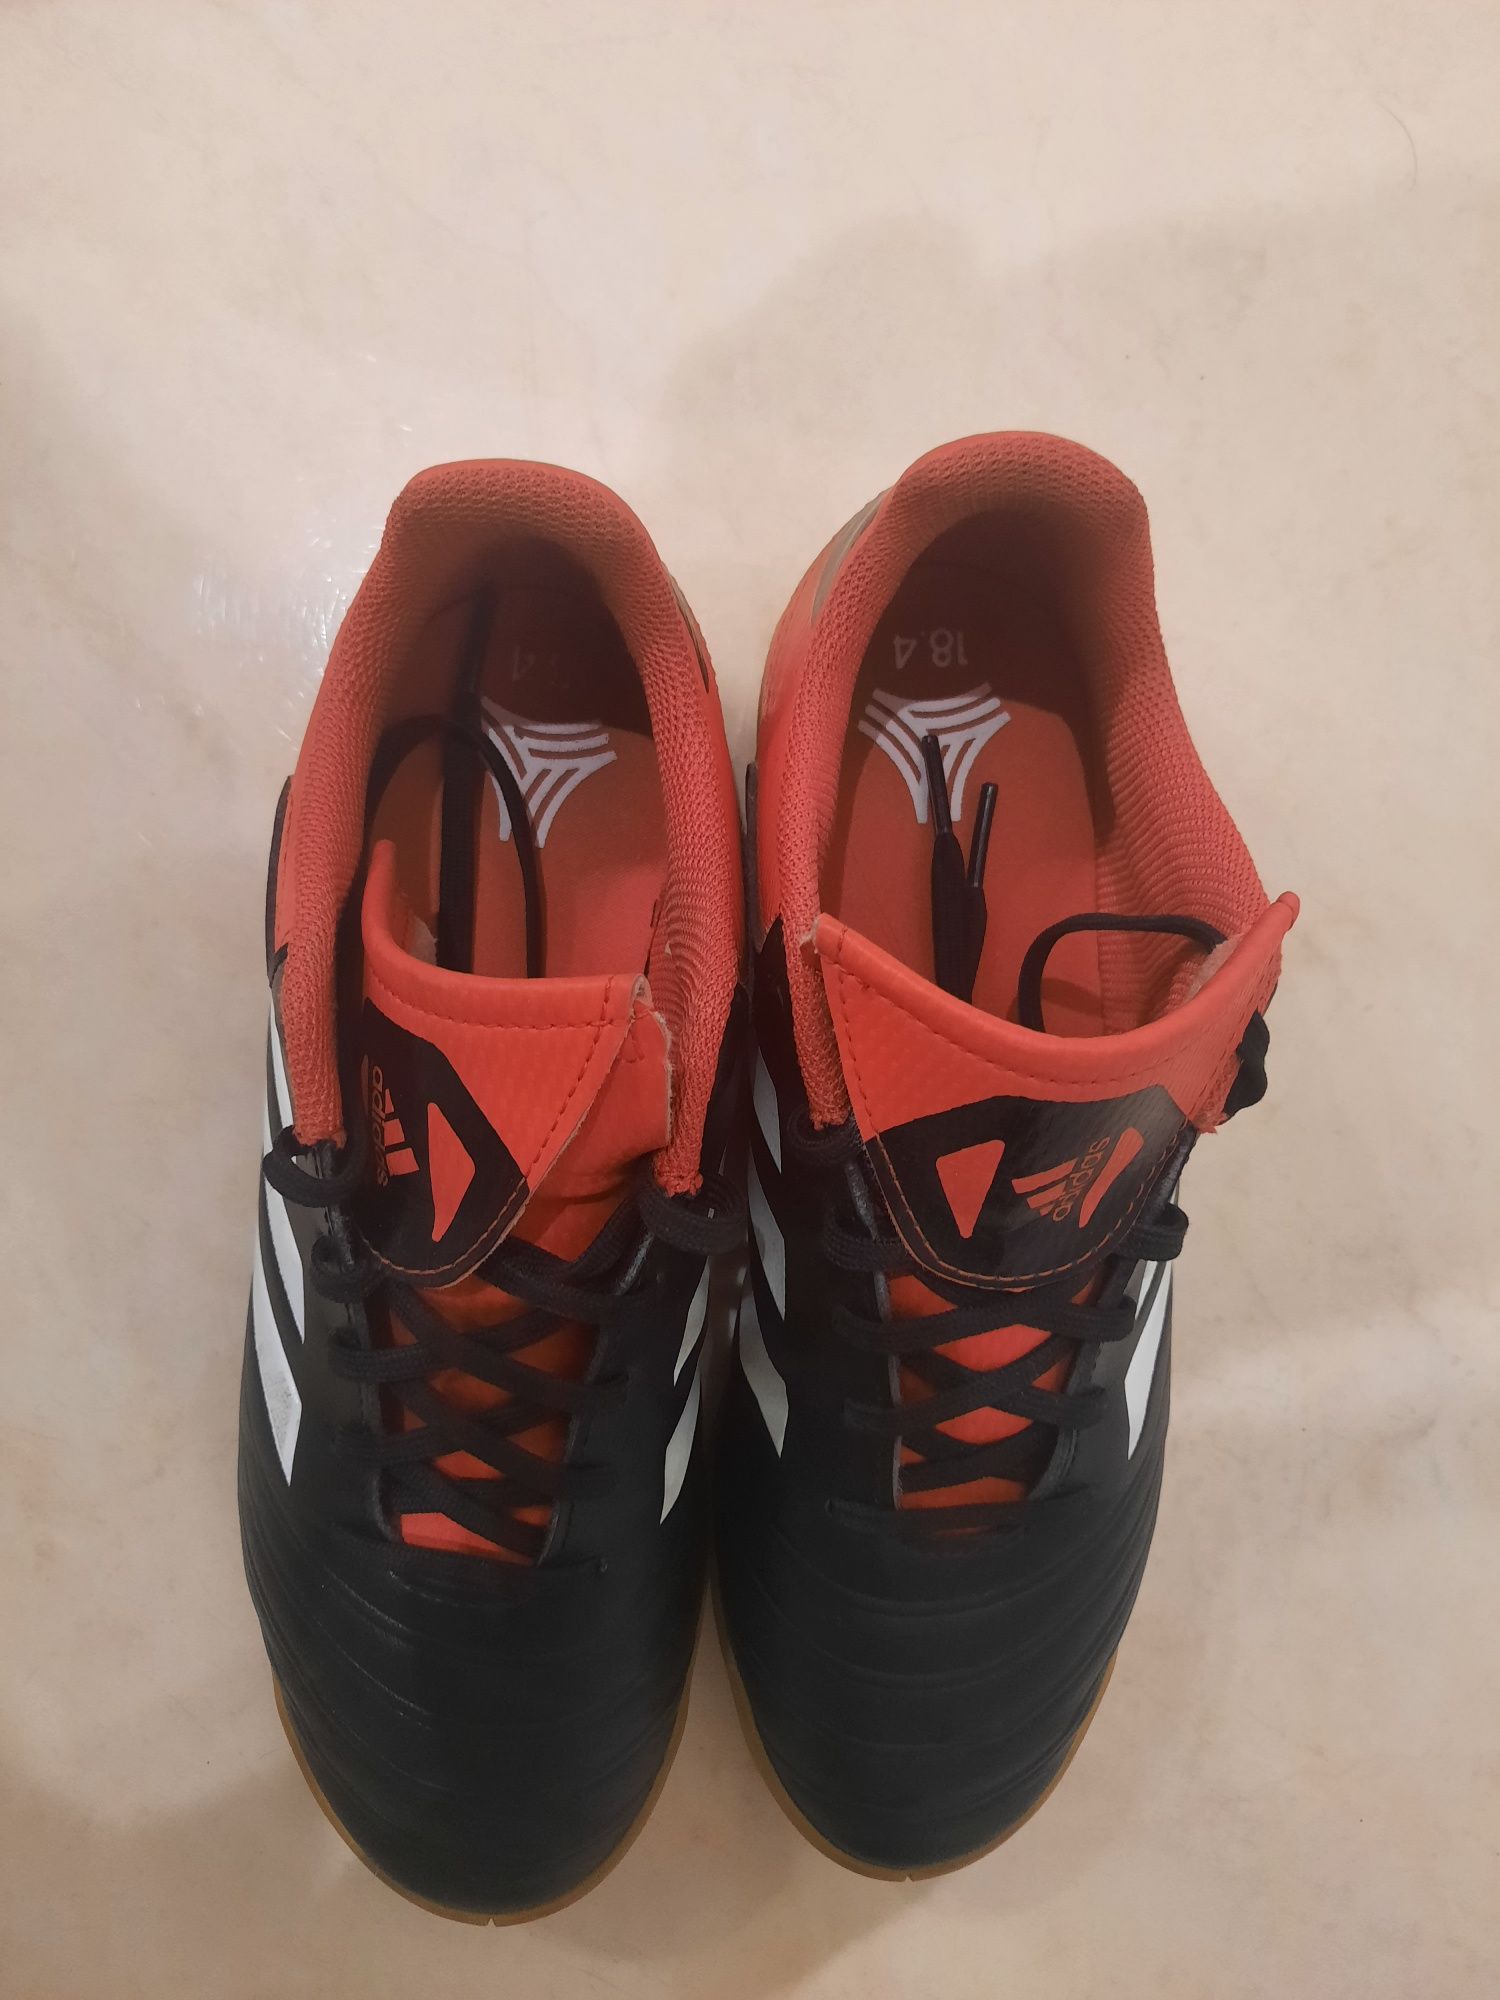 Buty piłkarskie adidas Copa Tango 18.4 Junior Rozmiar 38 Stan B.dobr